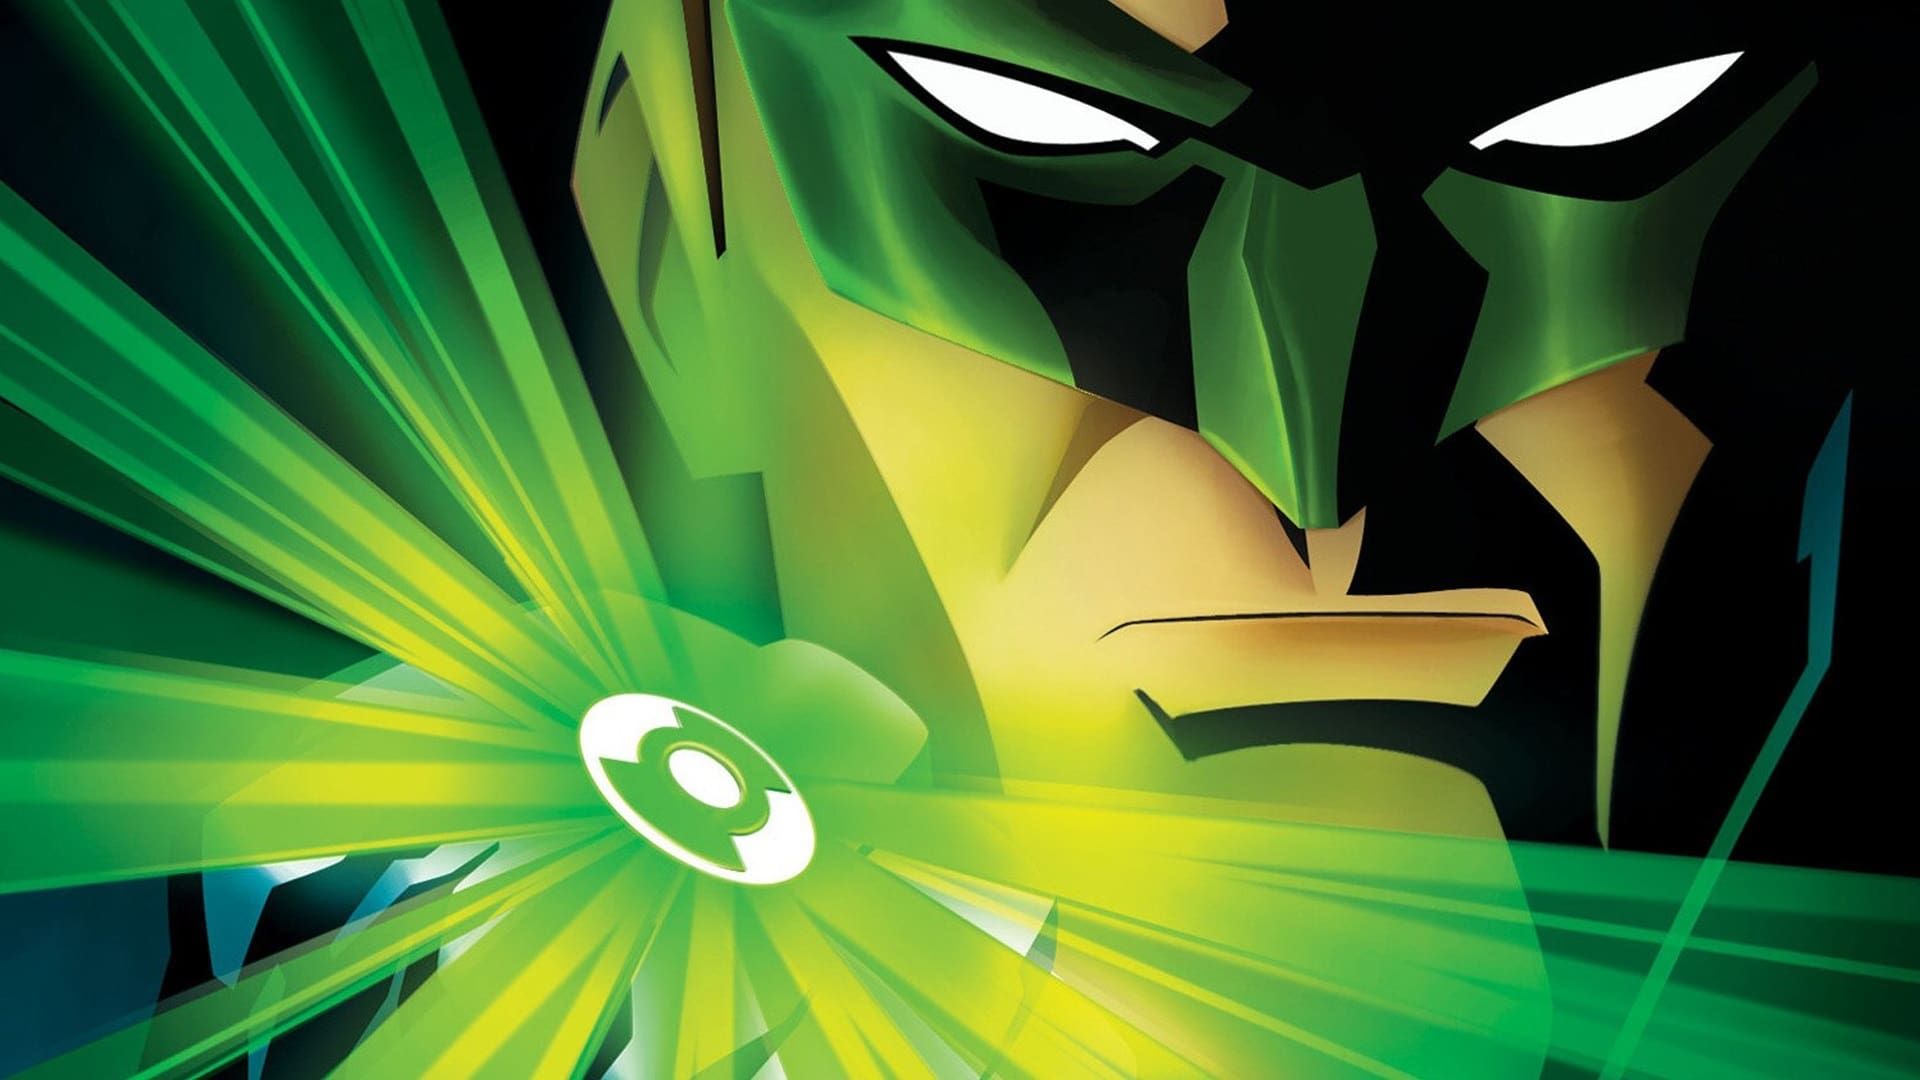 Green Lantern: First Flight background